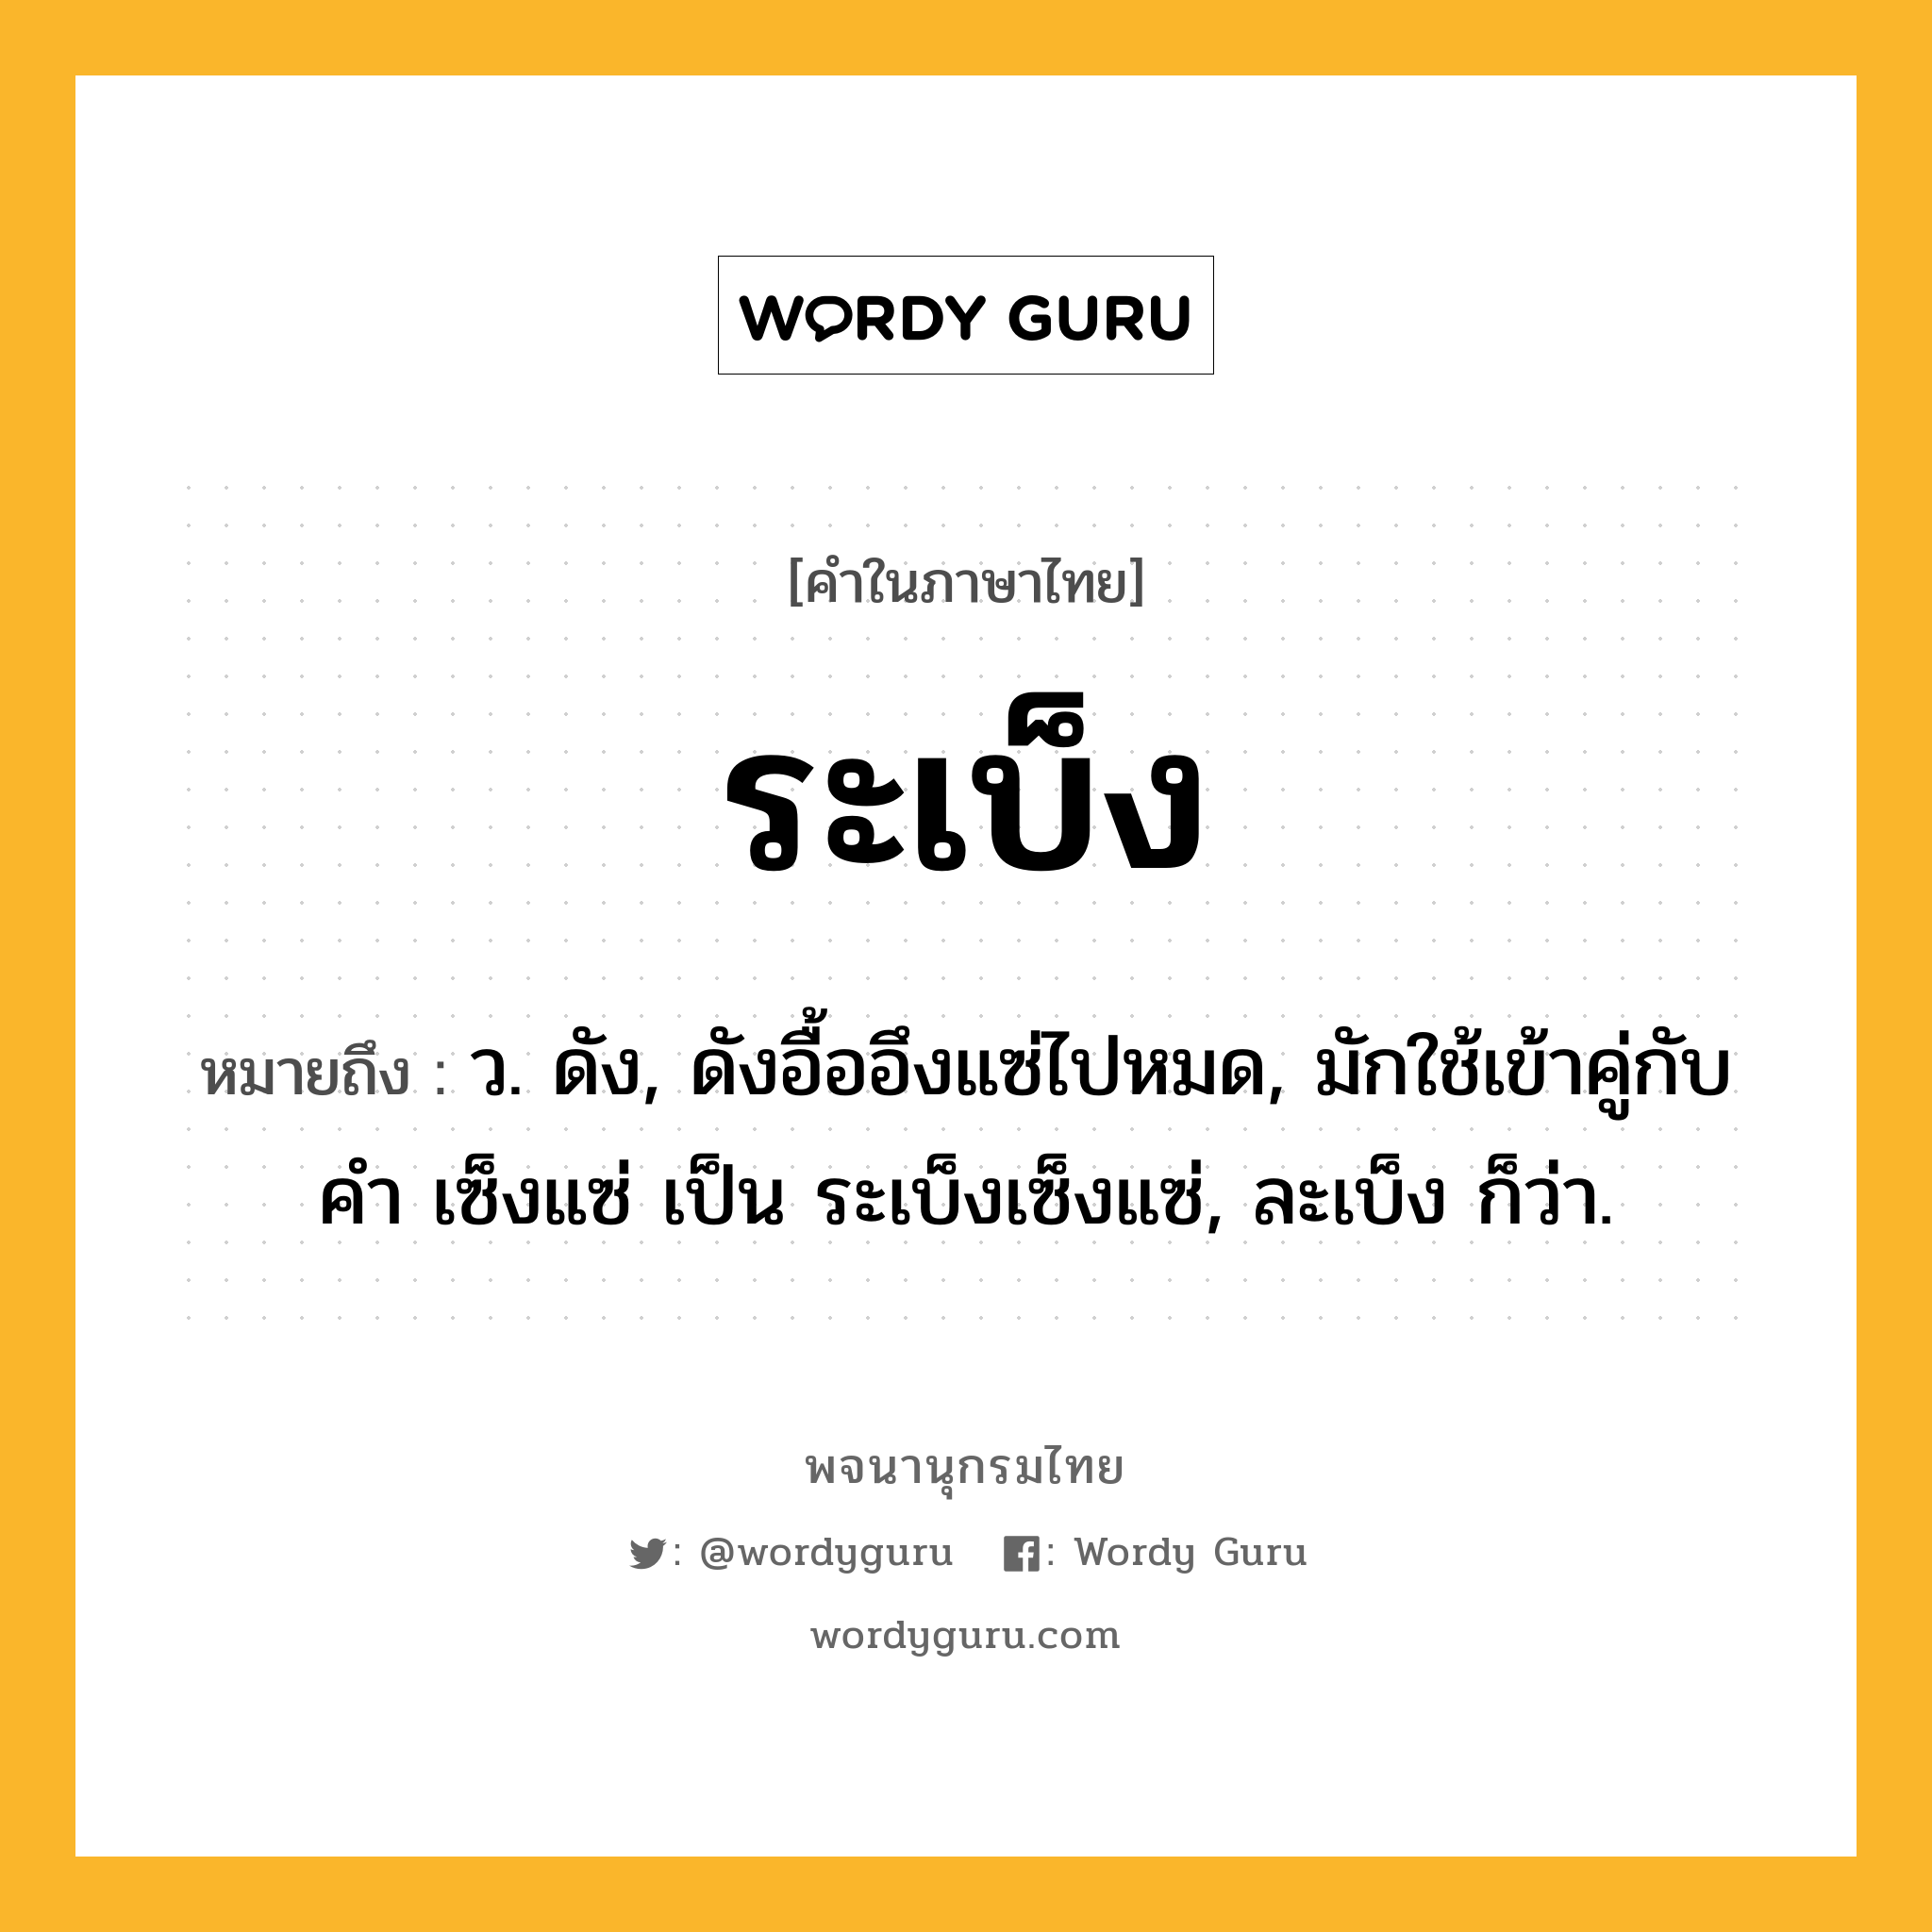 ระเบ็ง ความหมาย หมายถึงอะไร?, คำในภาษาไทย ระเบ็ง หมายถึง ว. ดัง, ดังอื้ออึงแซ่ไปหมด, มักใช้เข้าคู่กับคํา เซ็งแซ่ เป็น ระเบ็งเซ็งแซ่, ละเบ็ง ก็ว่า.